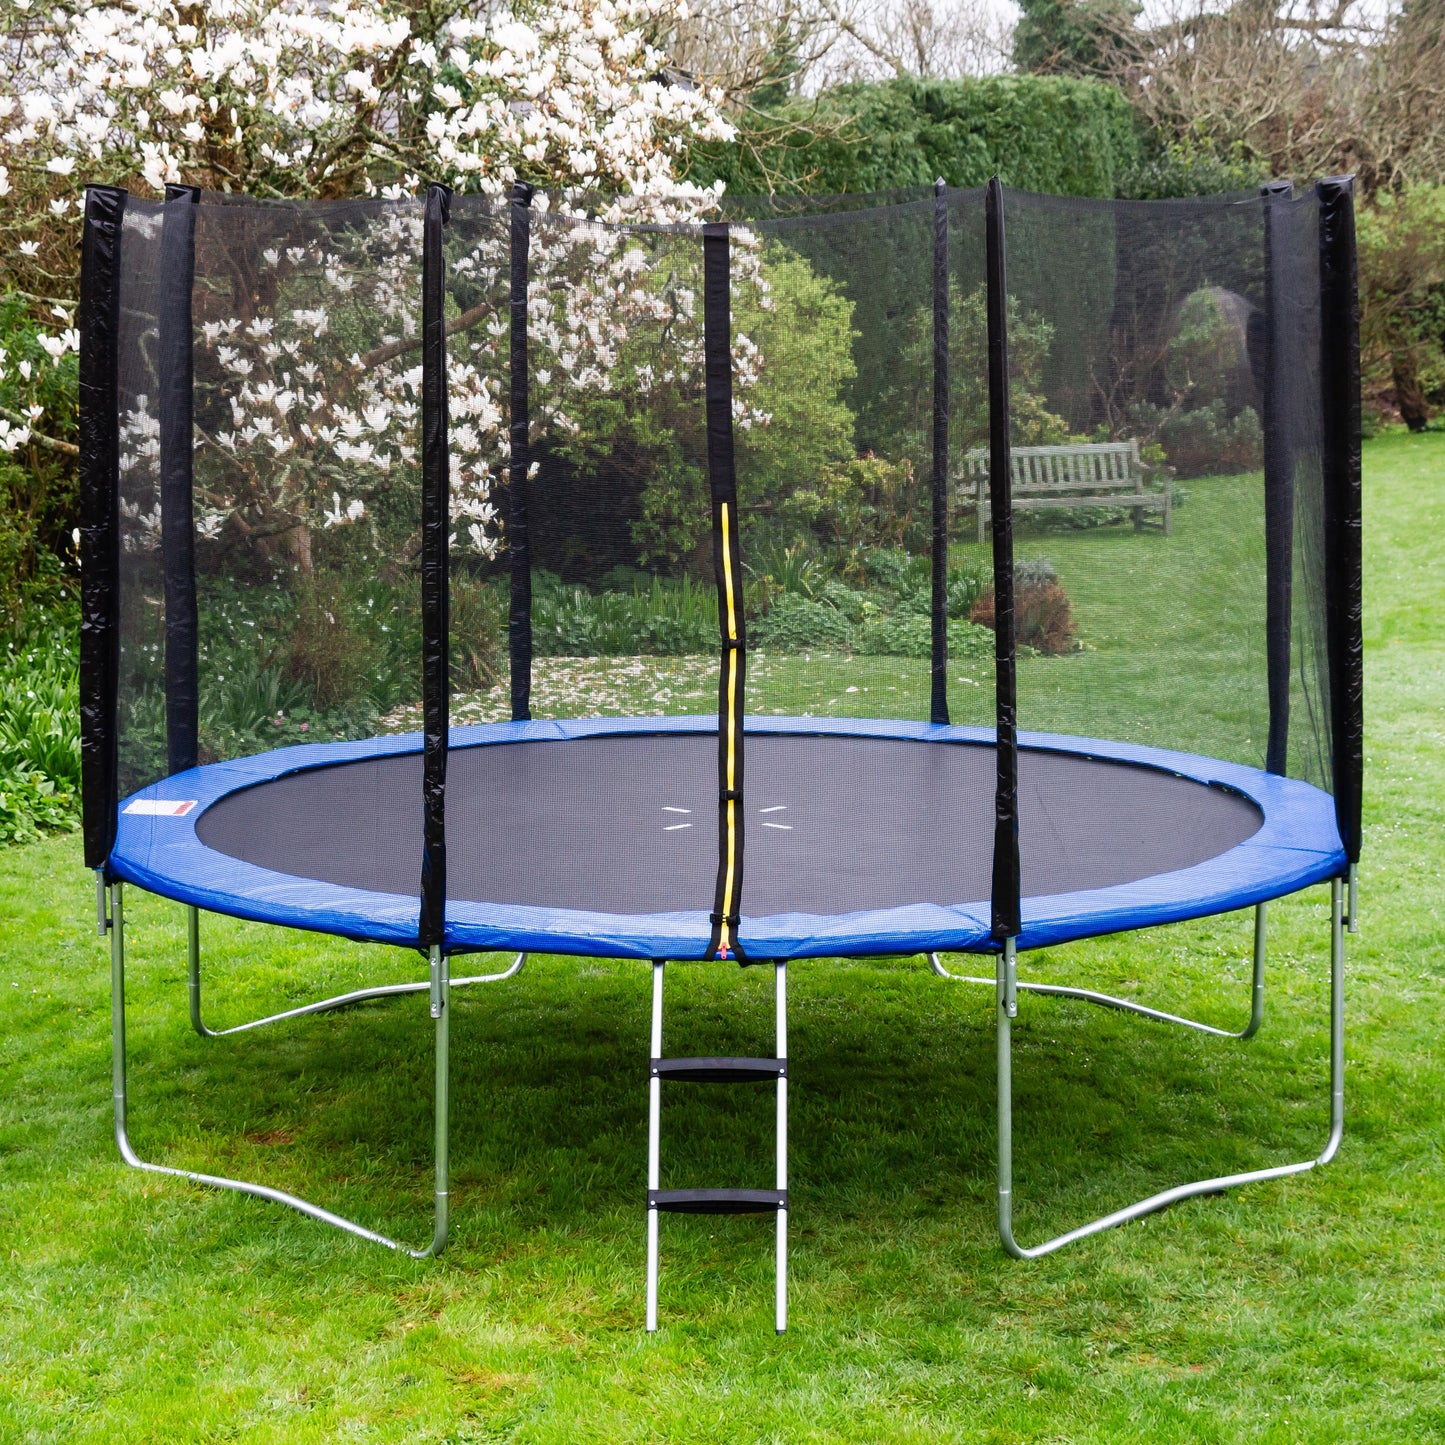 Acrobat 12ft trampoline package